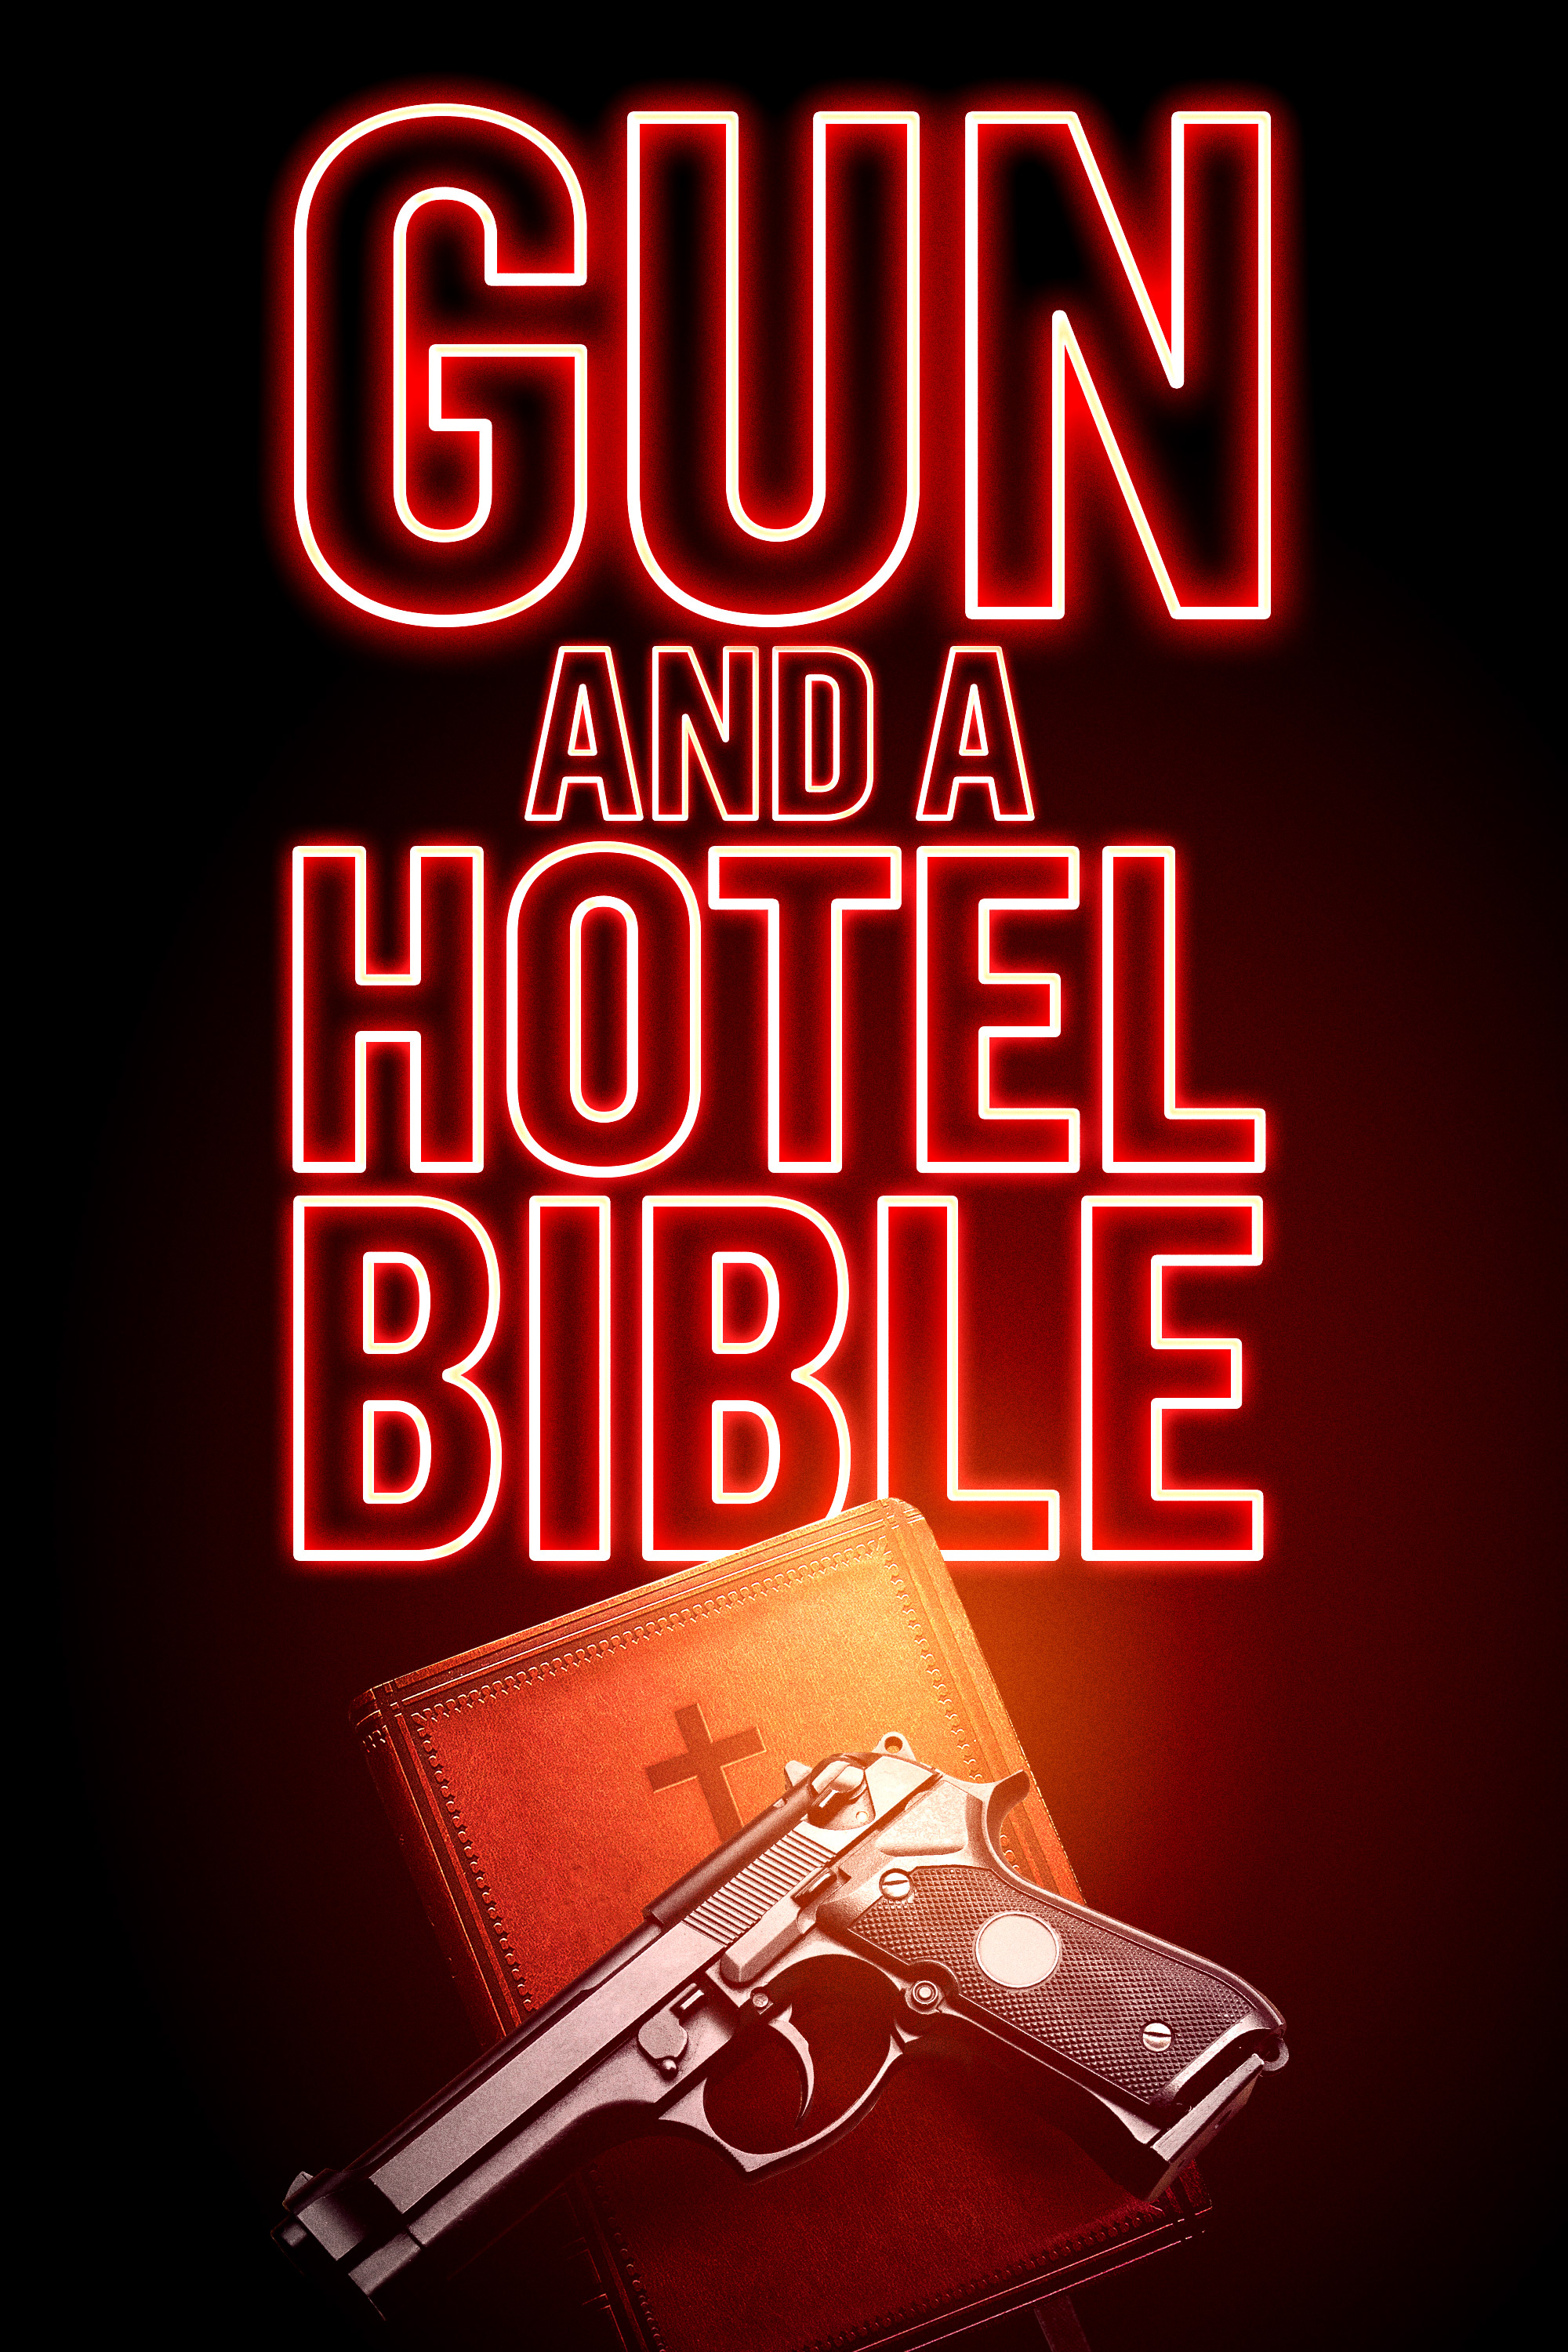 Gun and a Hotel Bible (2019) постер